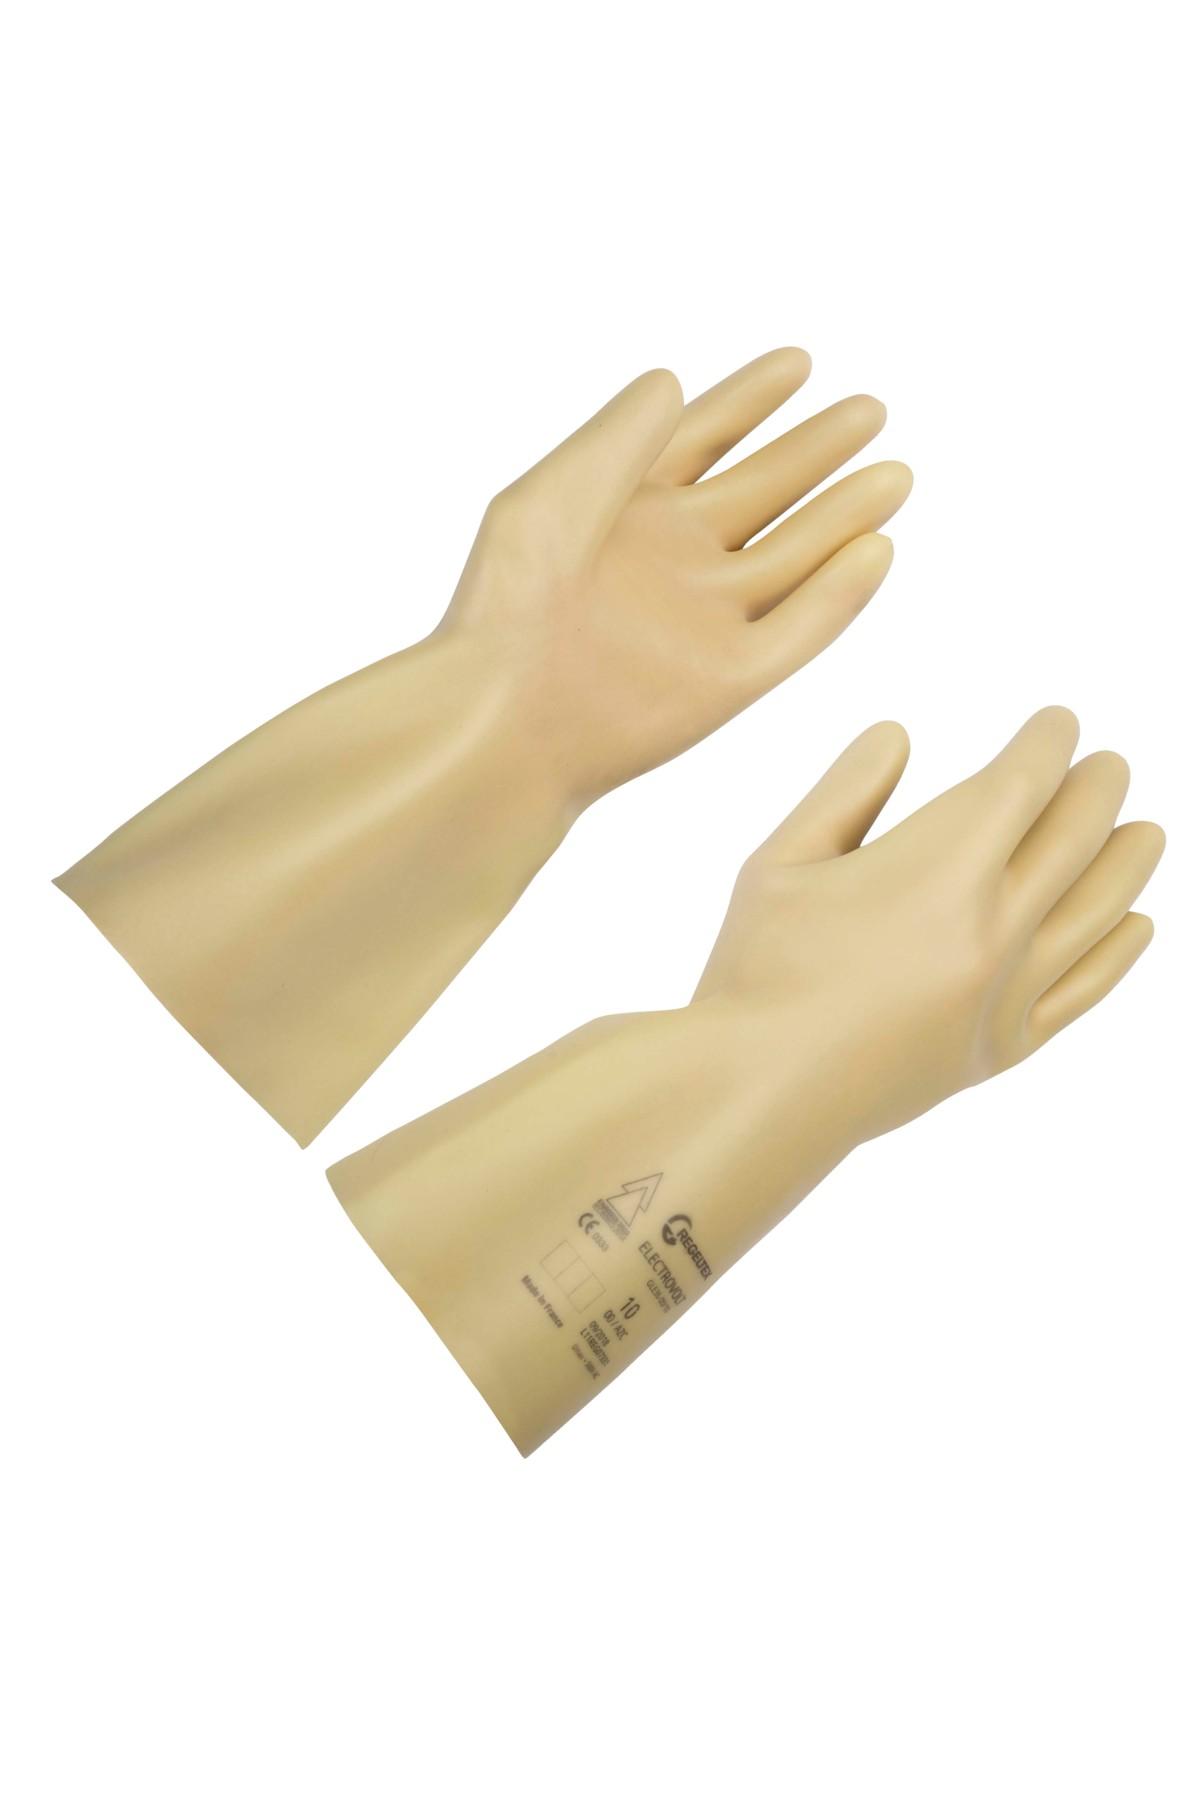 Insulated glove class 00